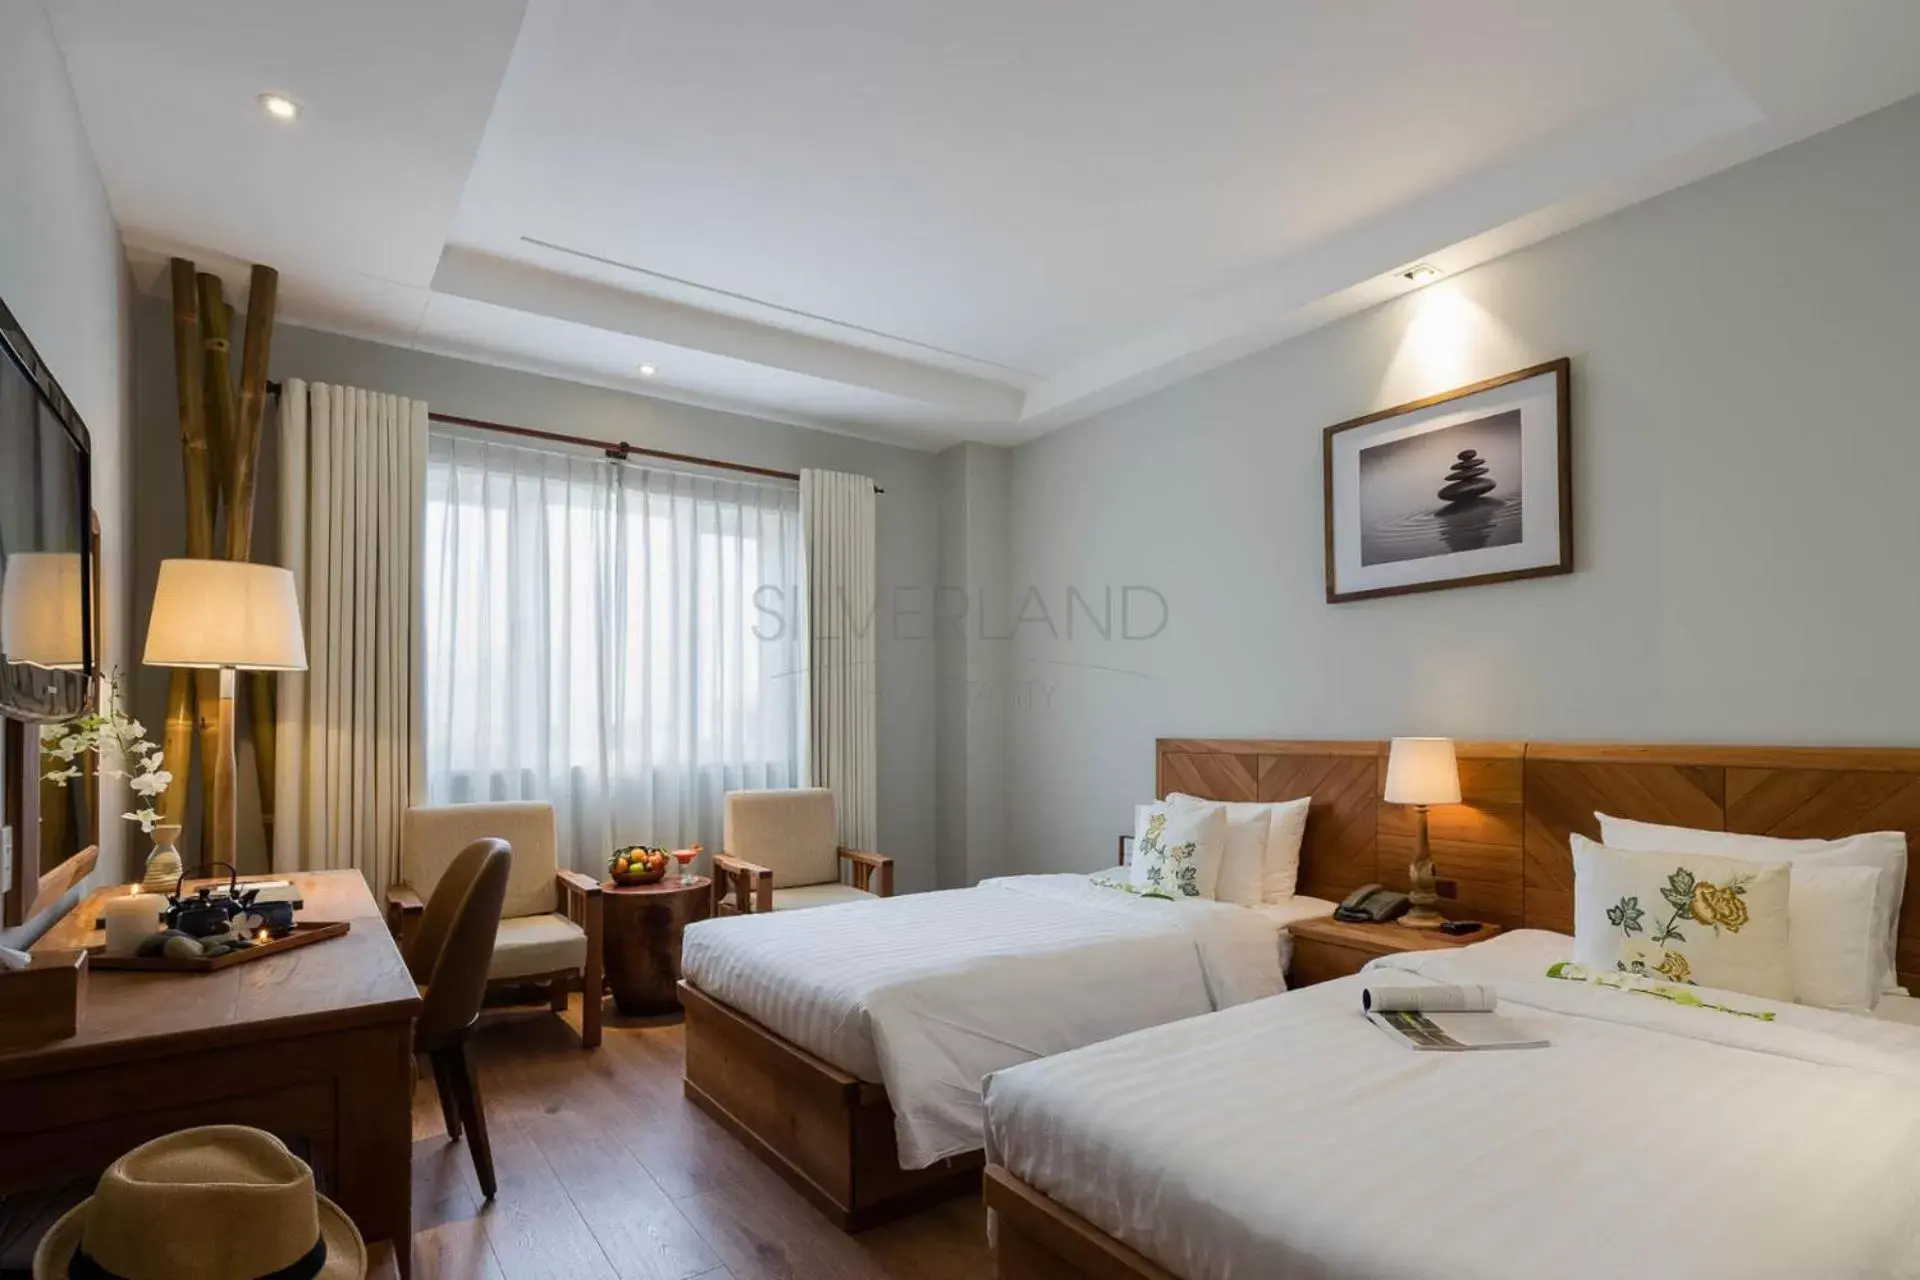 Bed in Silverland Yen Hotel